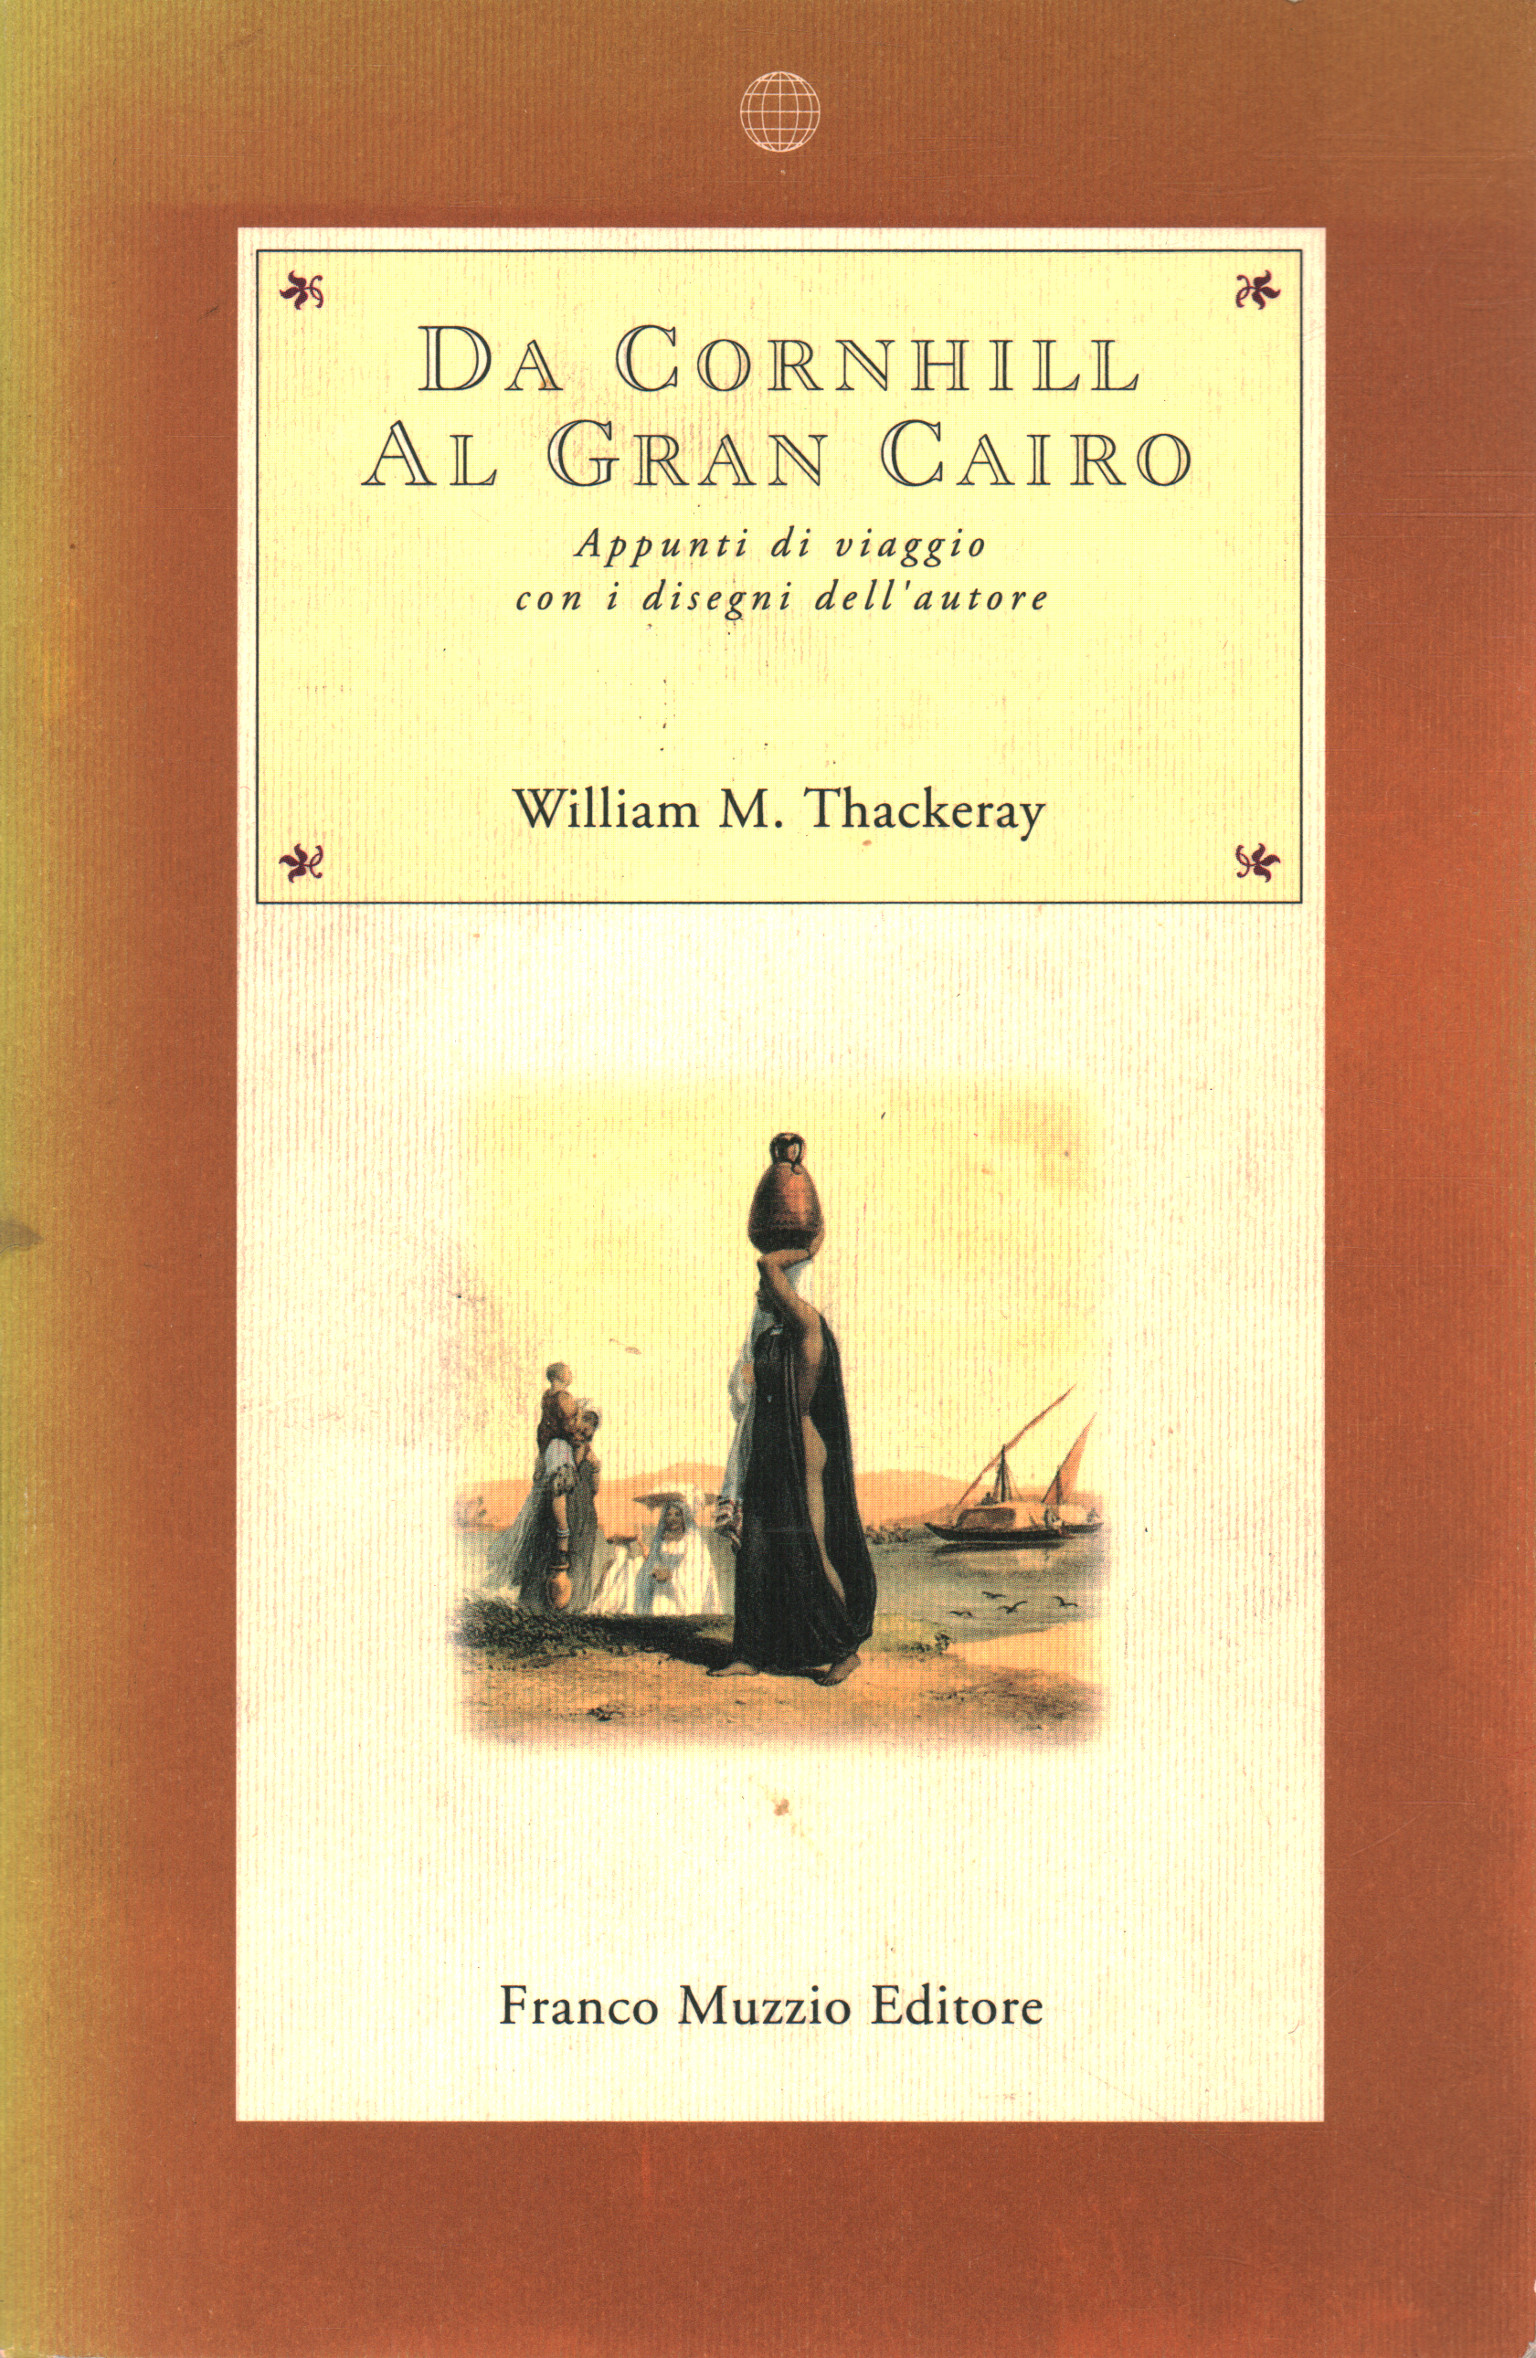 De Cornhill al Gran Cairo, William M. Thackeray